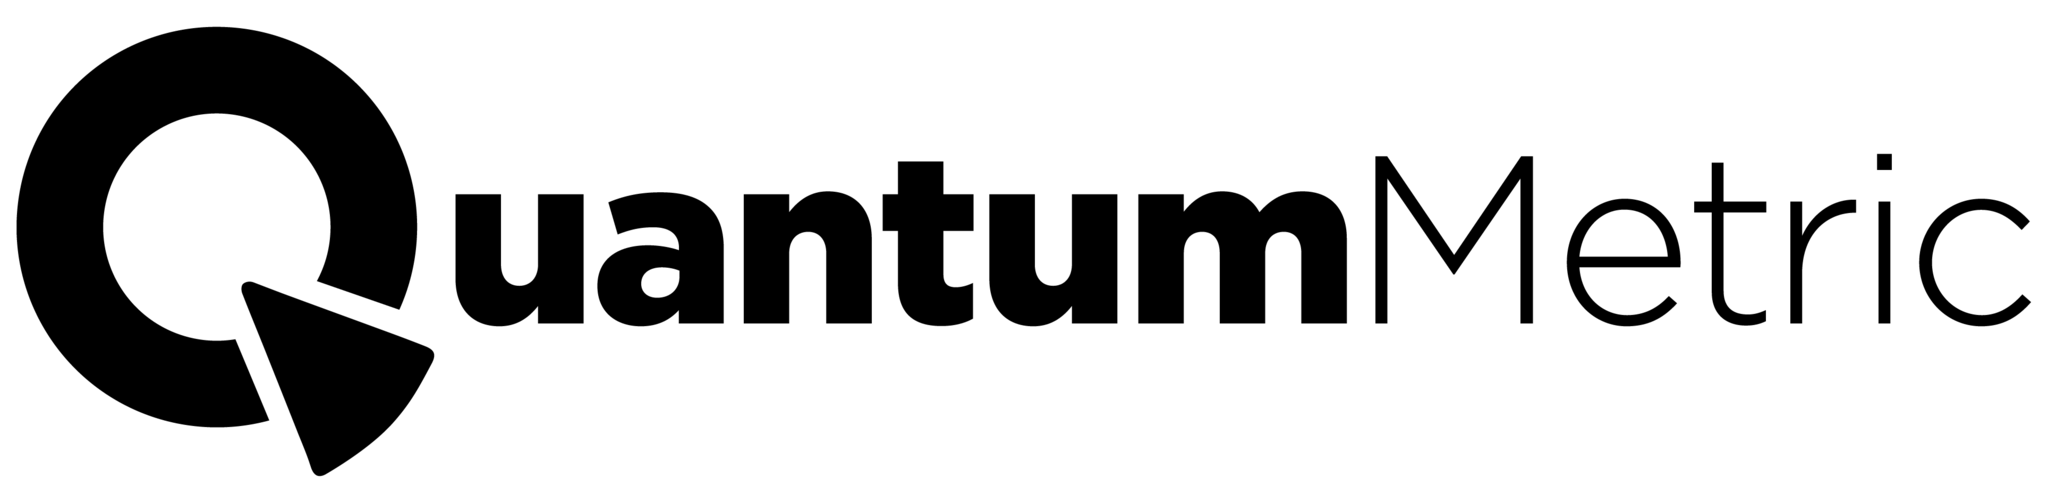 quantum-metrics-logo